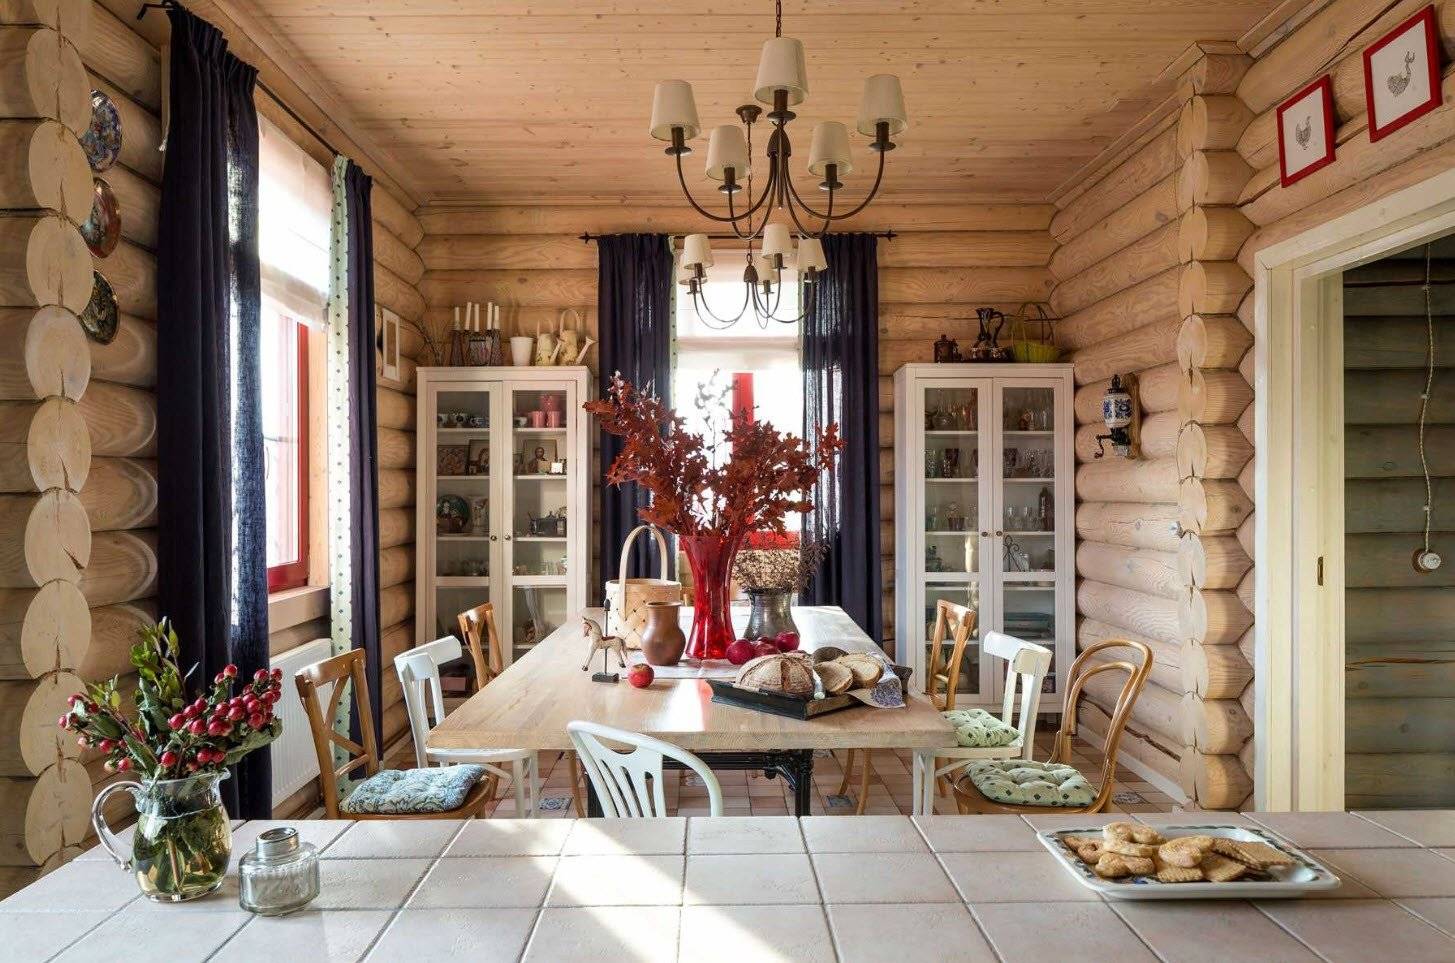 Дизайн бревенчатого дома внутри (17 фото)